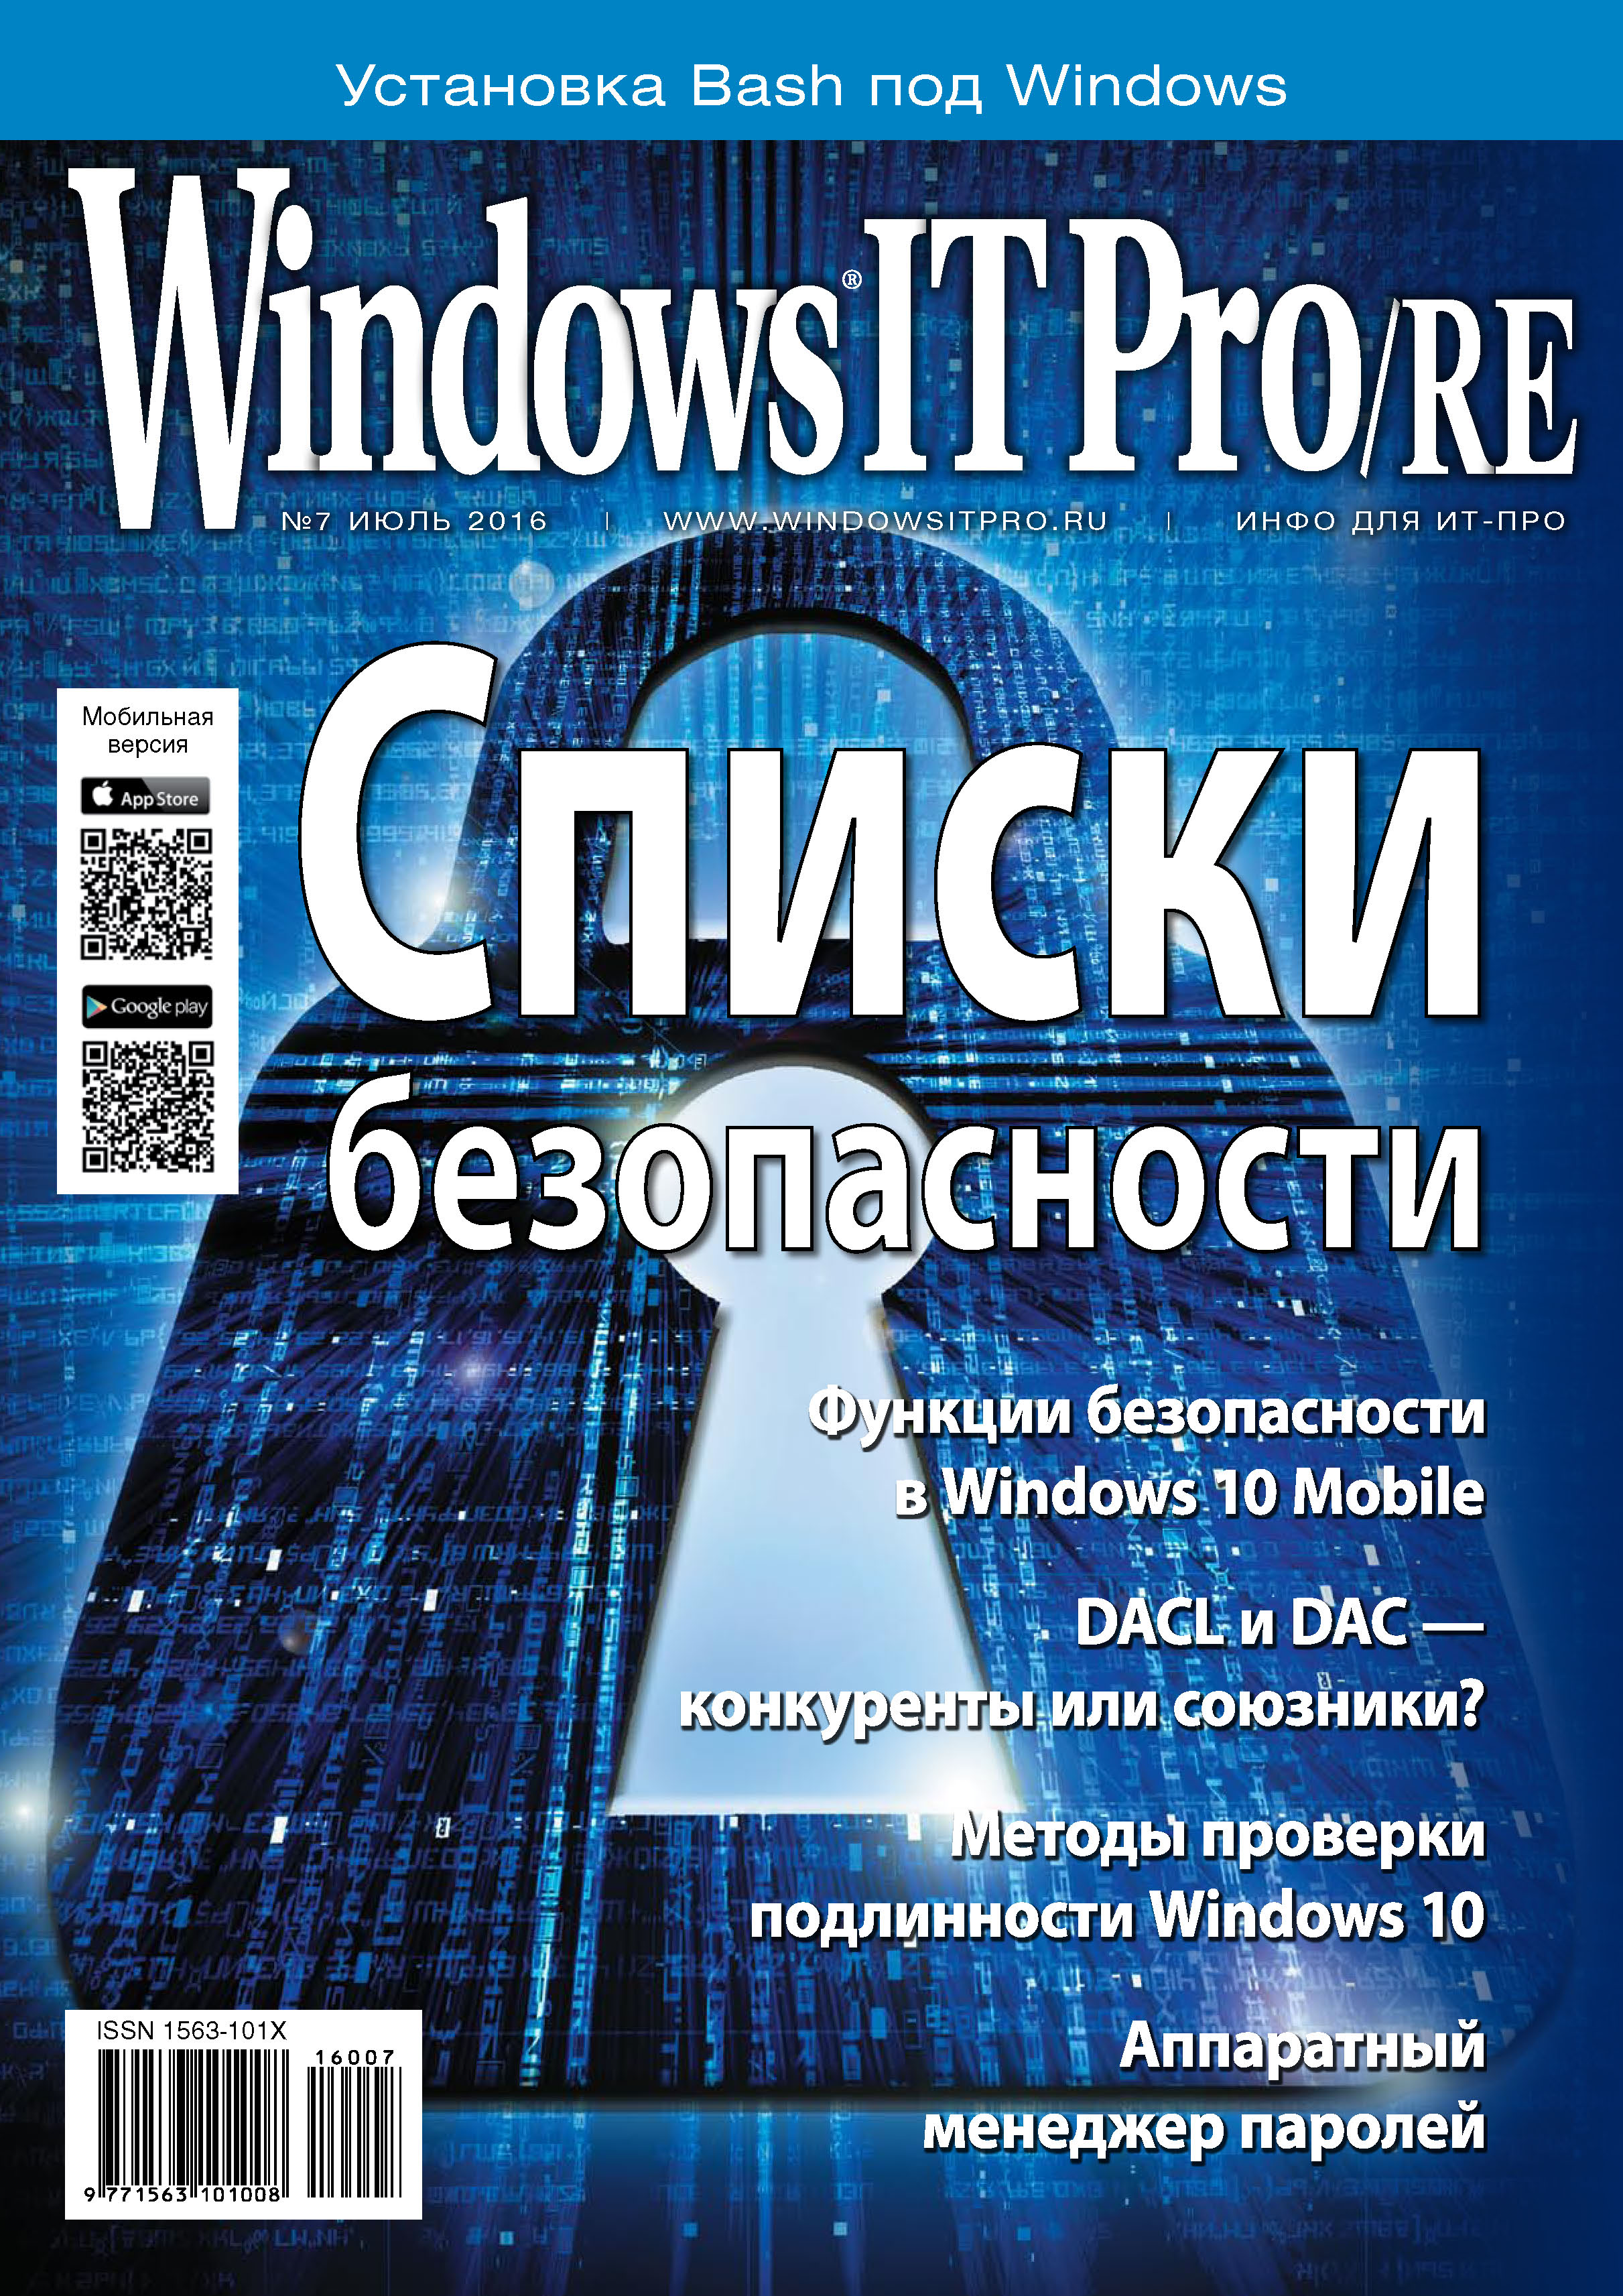 Книга Windows IT Pro 2016 Windows IT Pro/RE №07/2016 созданная Открытые системы может относится к жанру компьютерные журналы, ОС и сети, программы. Стоимость электронной книги Windows IT Pro/RE №07/2016 с идентификатором 19413242 составляет 484.00 руб.